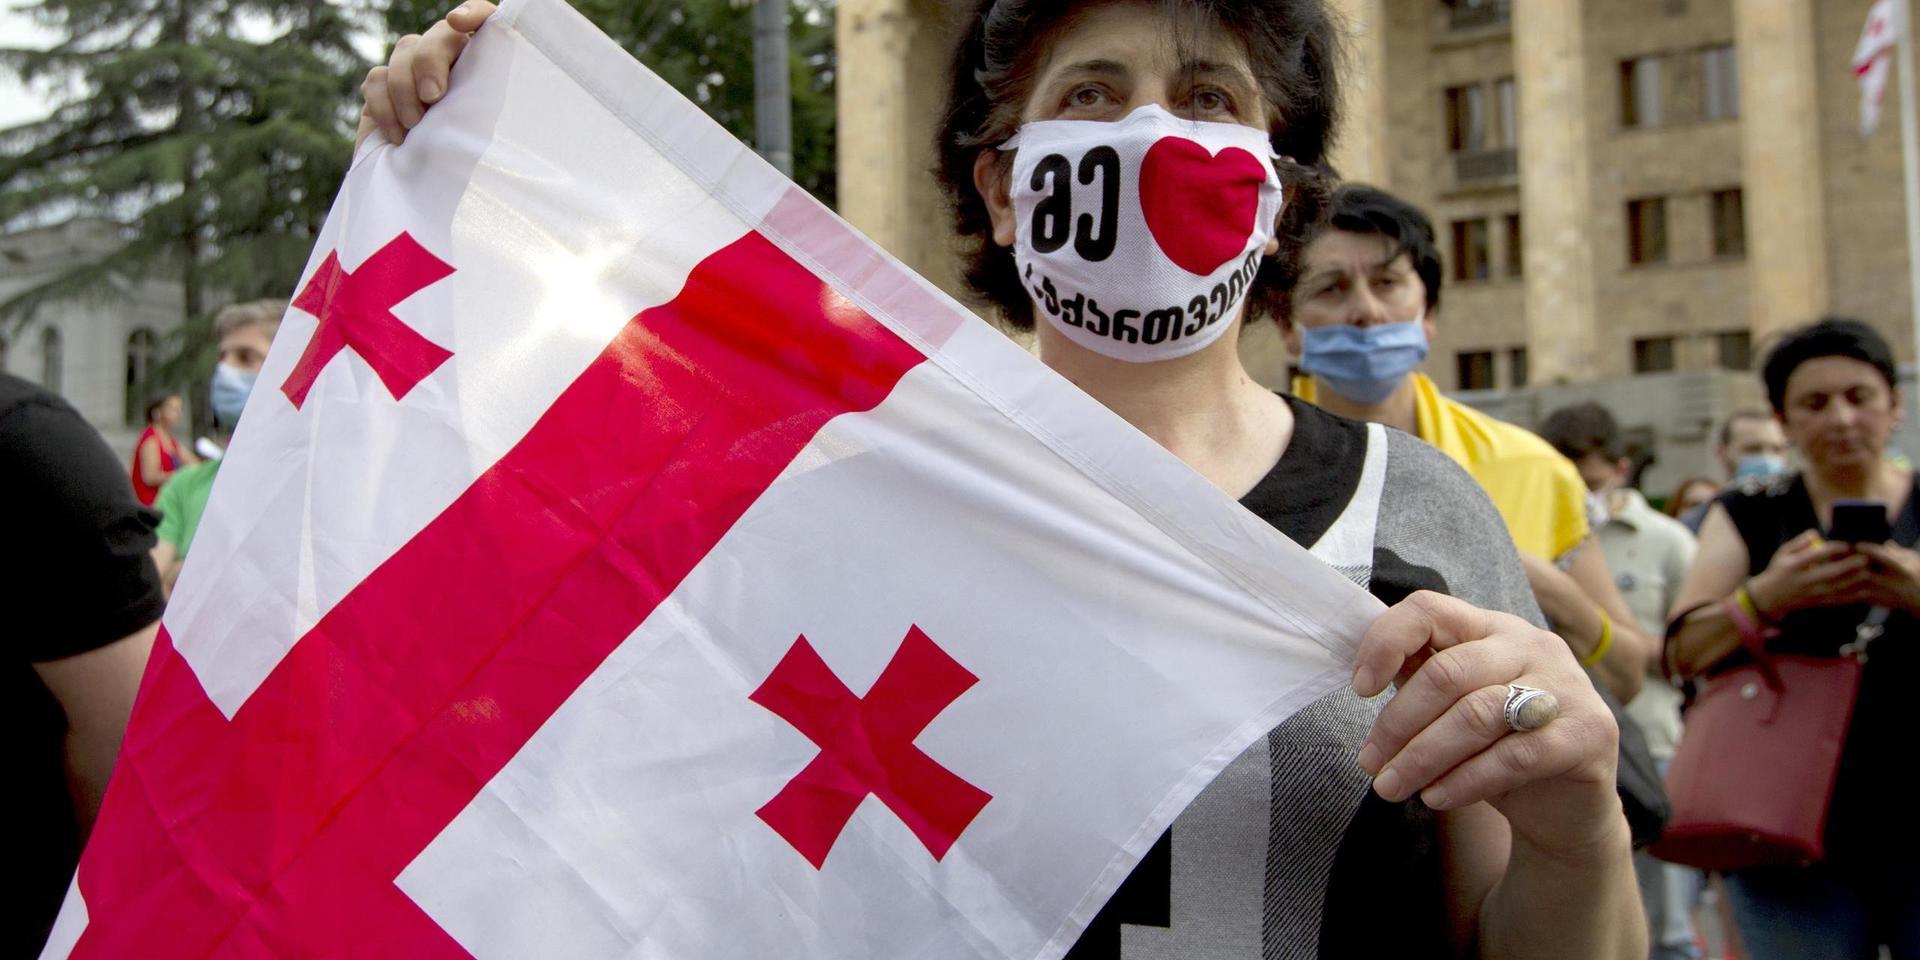 'Jag älskar Georgien', står det på det munskydd som en demonstrant i Tbilisi visar upp. Georgien är ett av de länder som EU nu vill öppna för resor till, efter coronakrisen. Arkivfoto.